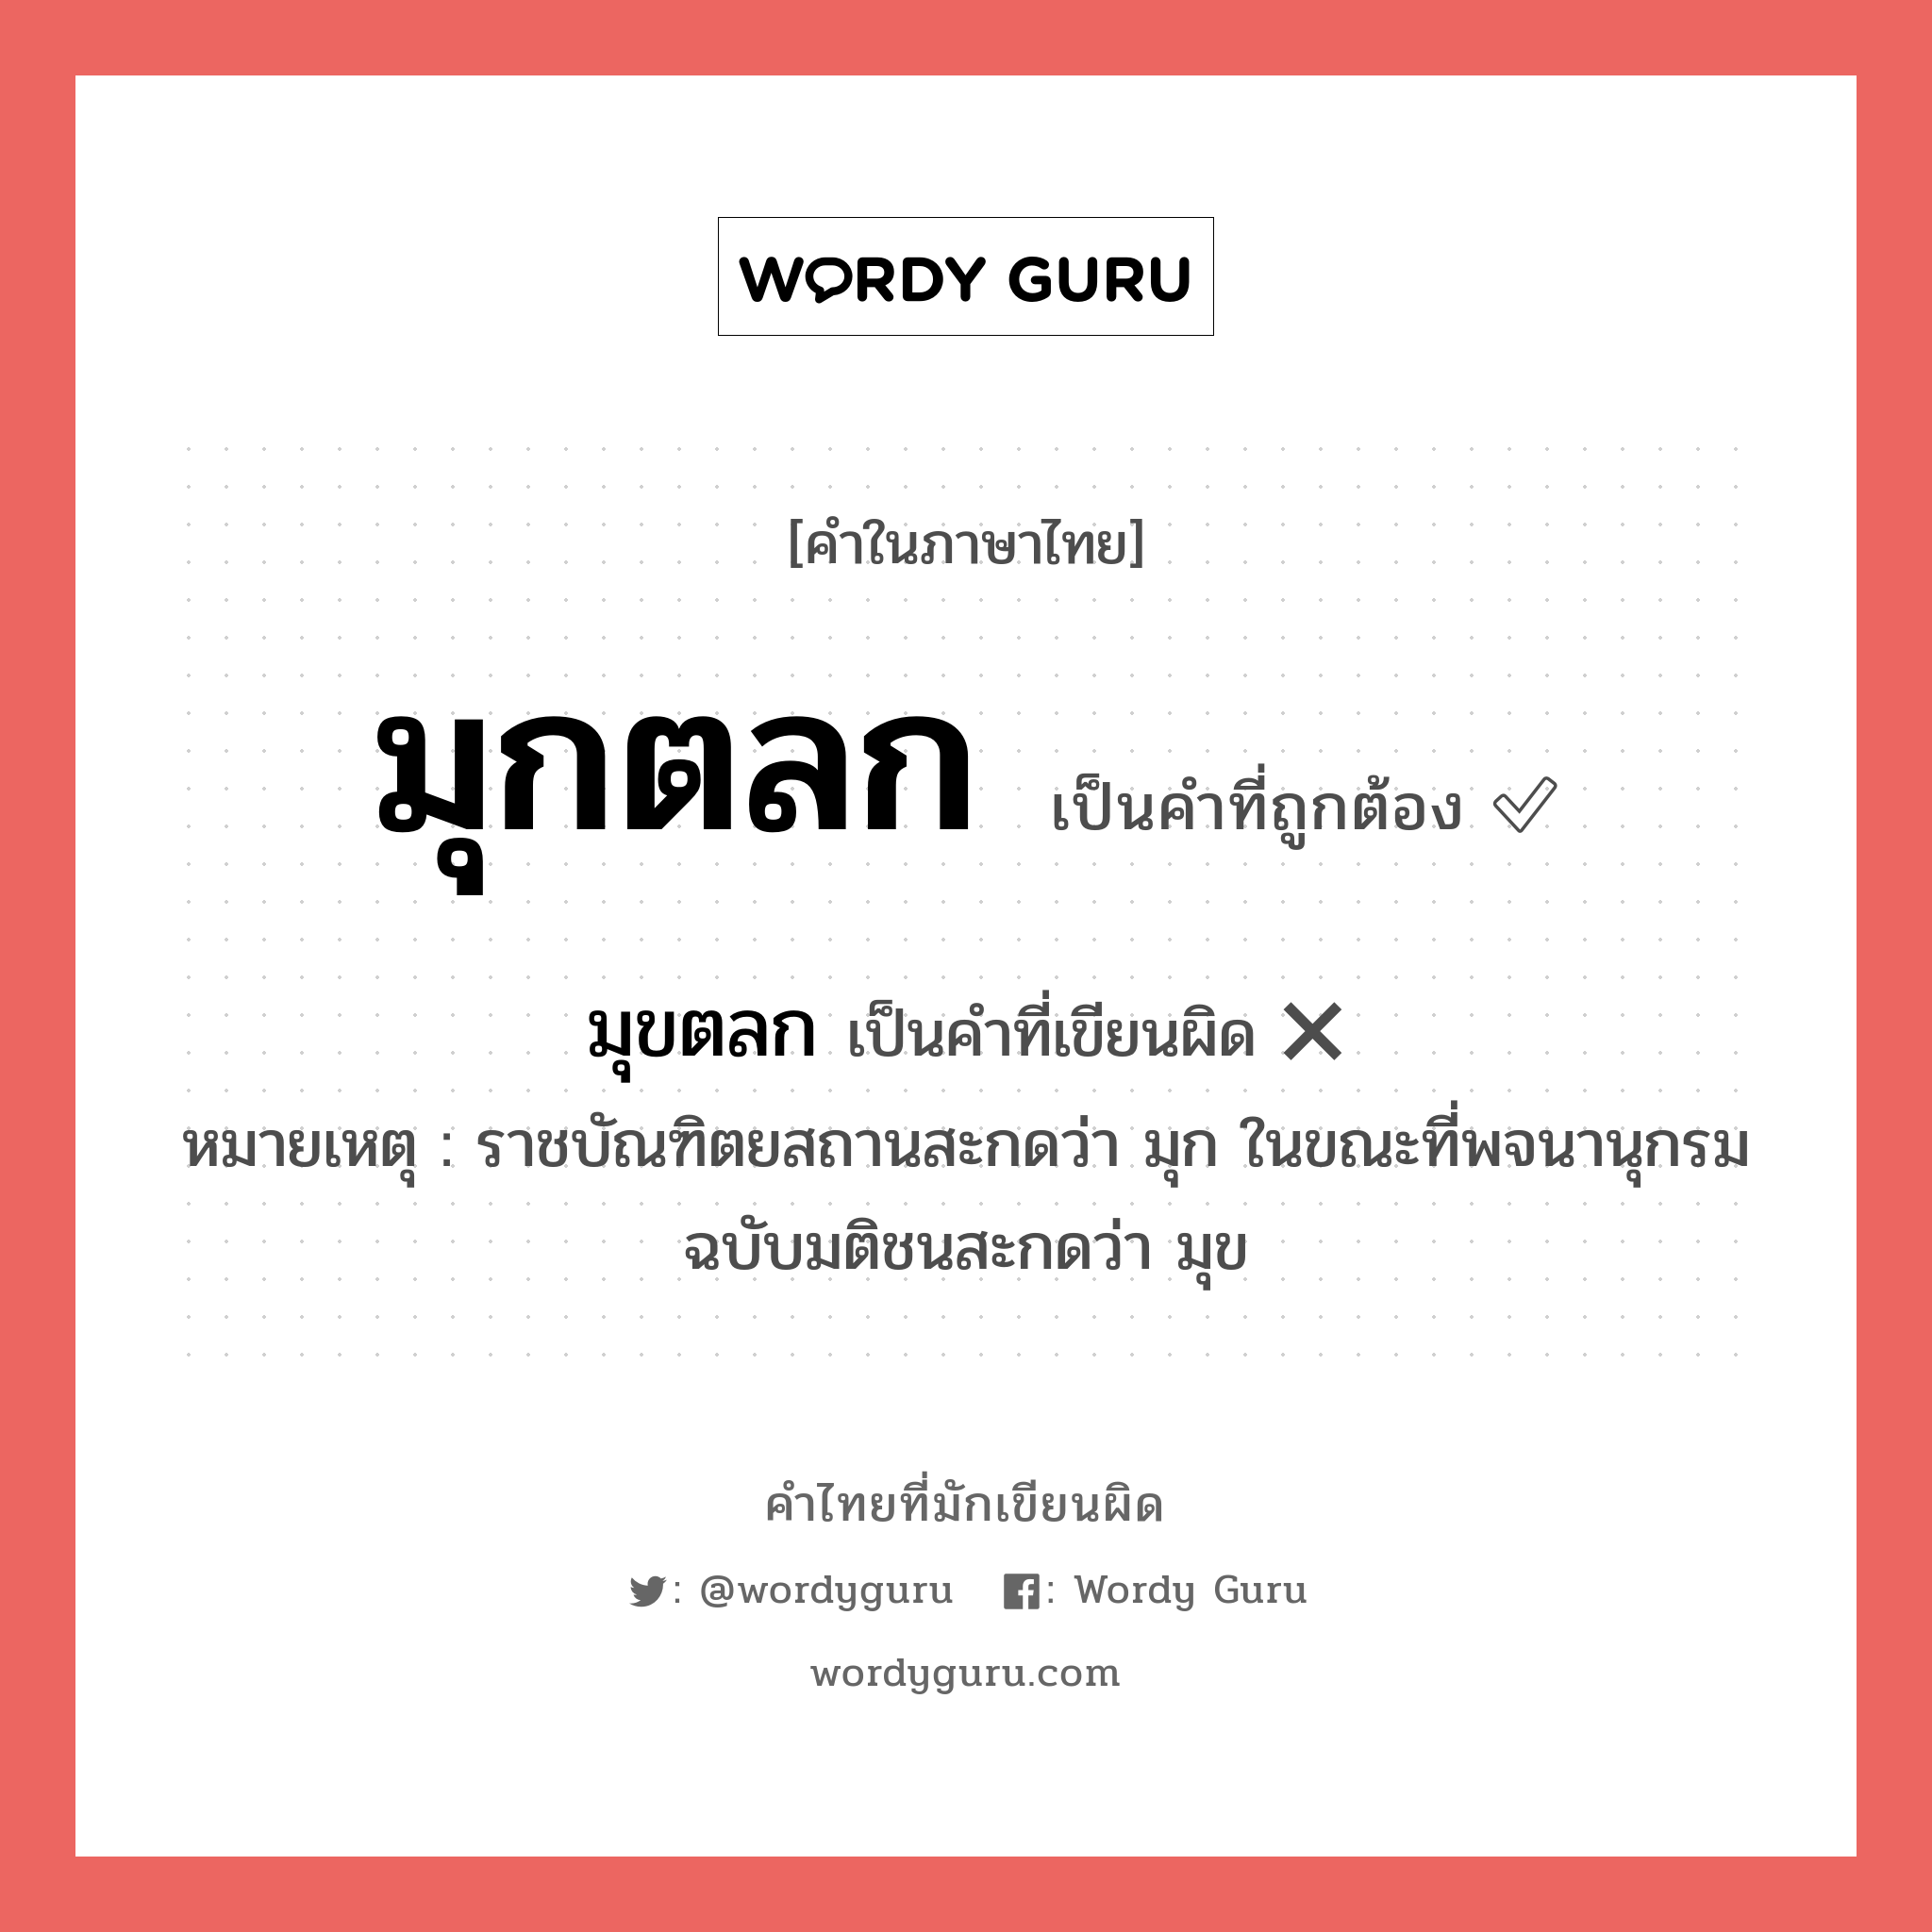 มุขตลก หรือ มุกตลก คำไหนเขียนถูก?, คำในภาษาไทยที่มักเขียนผิด มุขตลก คำที่ผิด ❌ มุกตลก หมายเหตุ ราชบัณฑิตยสถานสะกดว่า มุก ในขณะที่พจนานุกรมฉบับมติชนสะกดว่า มุข